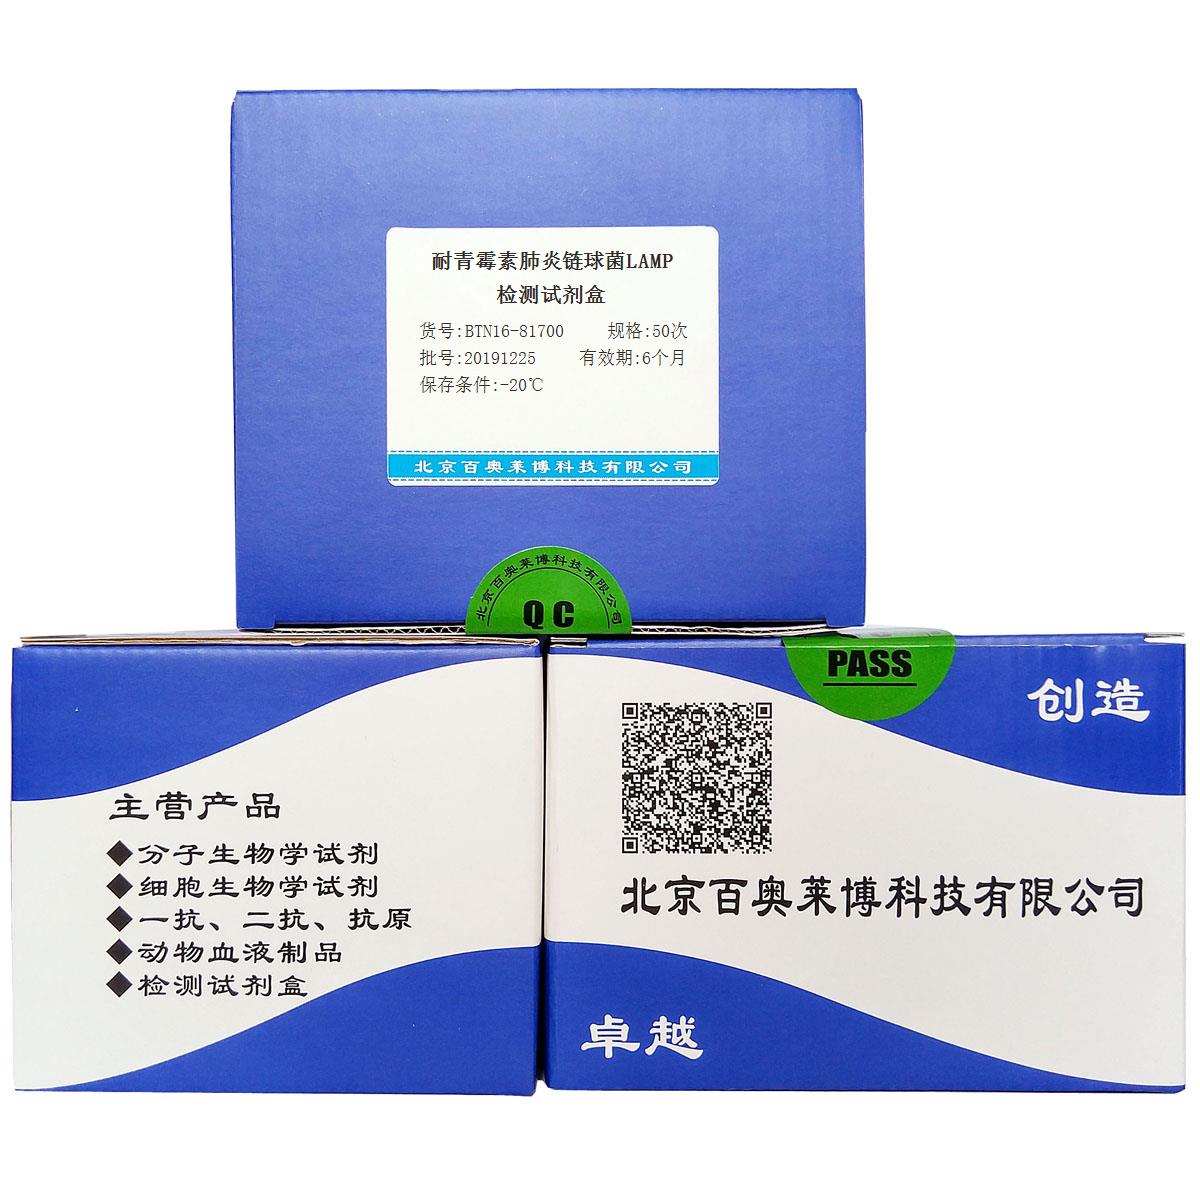 耐青霉素肺炎链球菌LAMP检测试剂盒现货供应